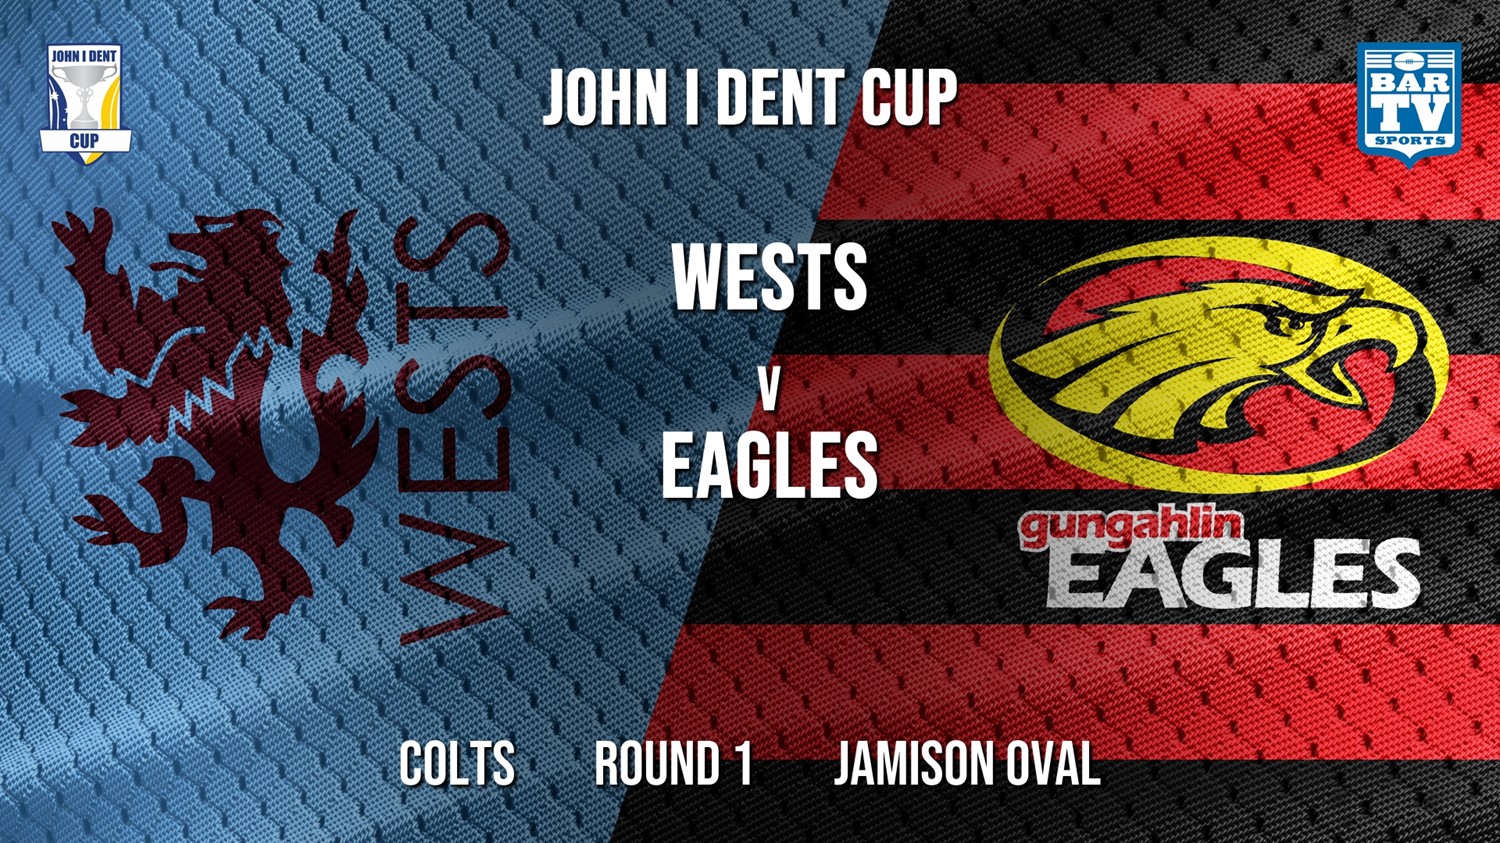 John I Dent Round 1 - Colts - Wests Lions v Gungahlin Eagles Minigame Slate Image